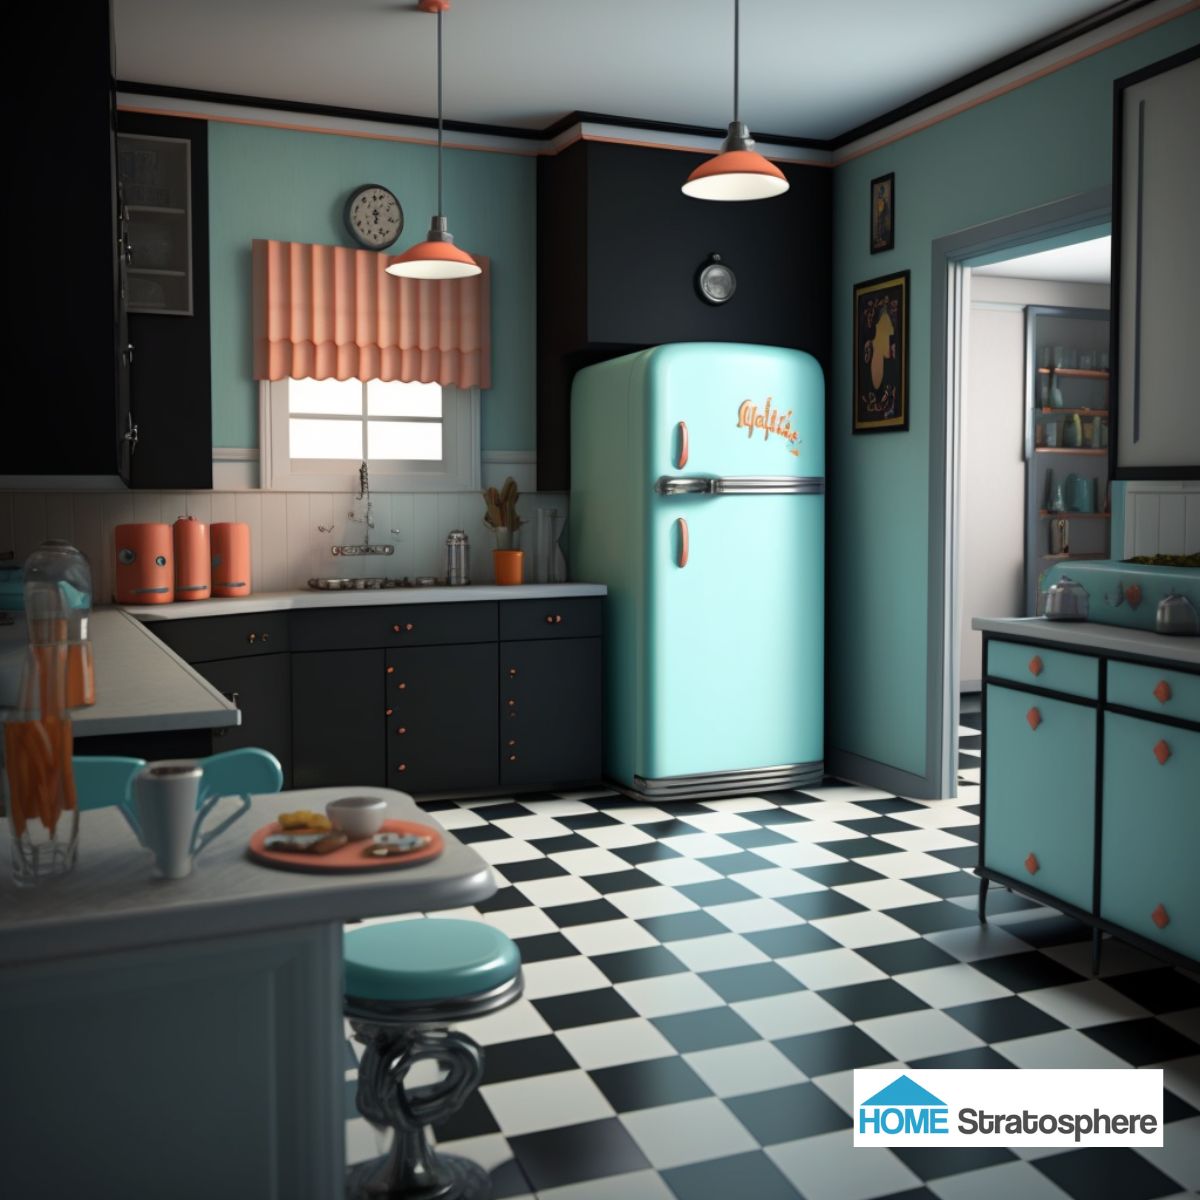 这个概念展示了在厨房中非常好的深色应用，强调了不需要太多清洁的表面区域，同时让台面保持白色。由于格子地板和冰箱的设计，黑色、蓝绿色和白色的组合仍然传达出一种复古的感觉。